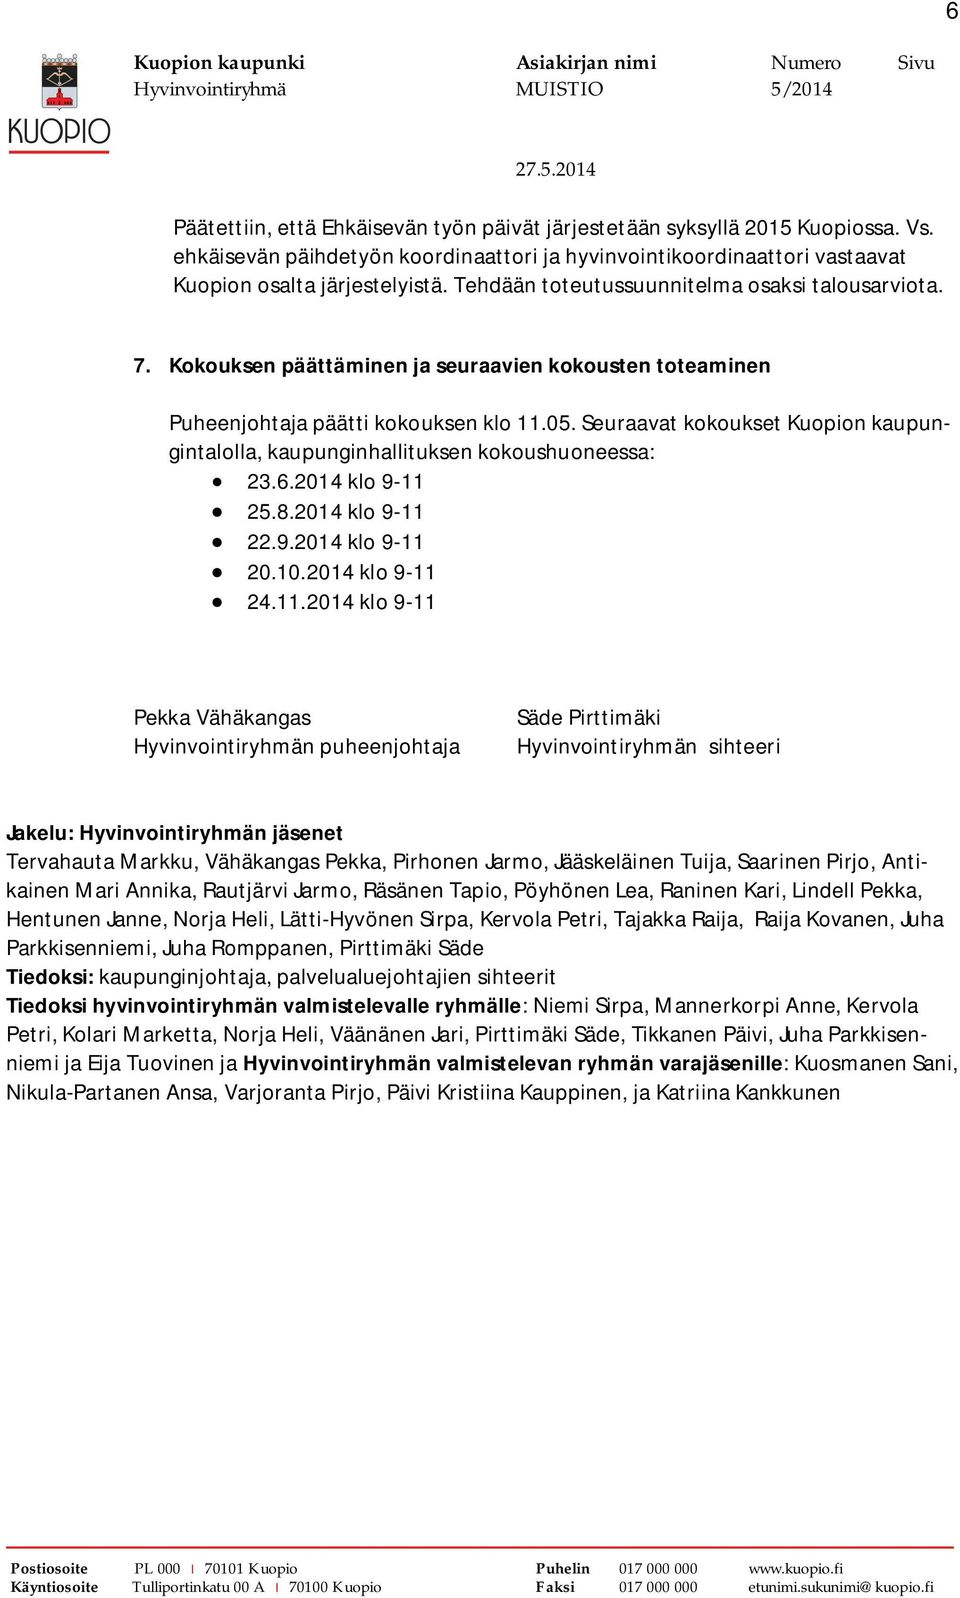 Seuraavat kokoukset Kuopion kaupungintalolla, kaupunginhallituksen kokoushuoneessa: 23.6.2014 klo 9-11 